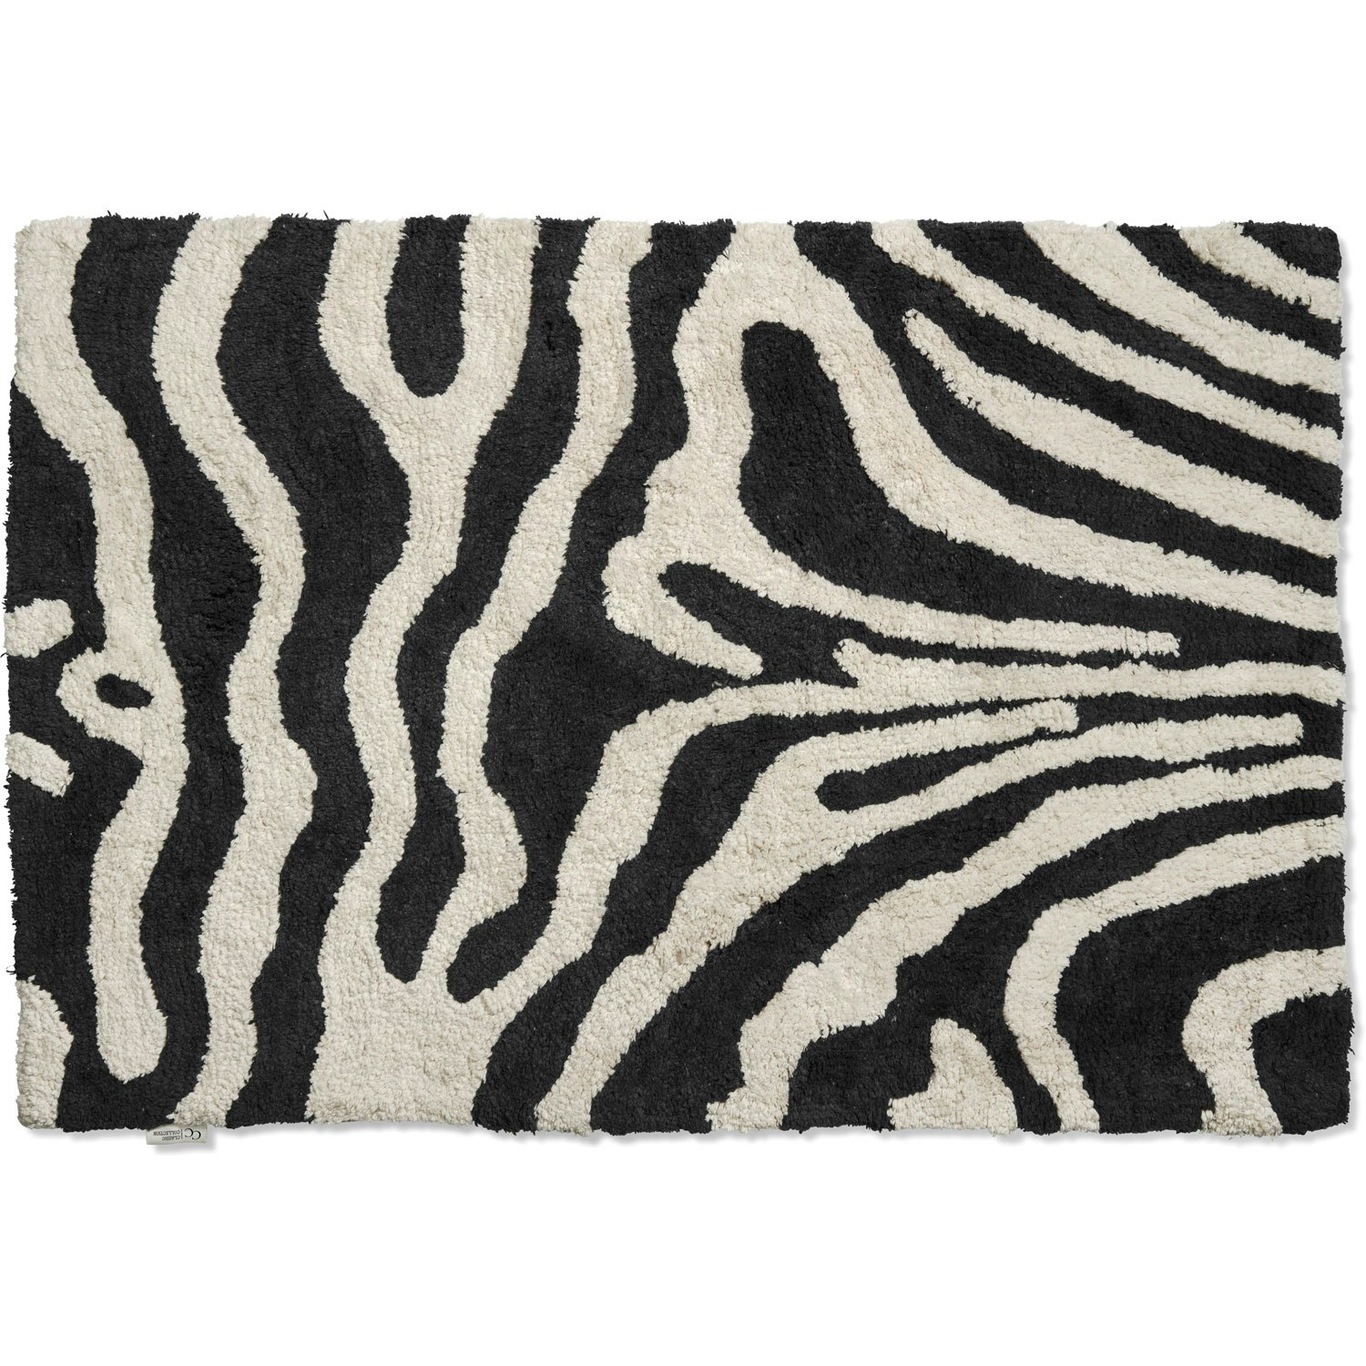 Zebra Badematte 60x90 cm, Schwarz/Weiß